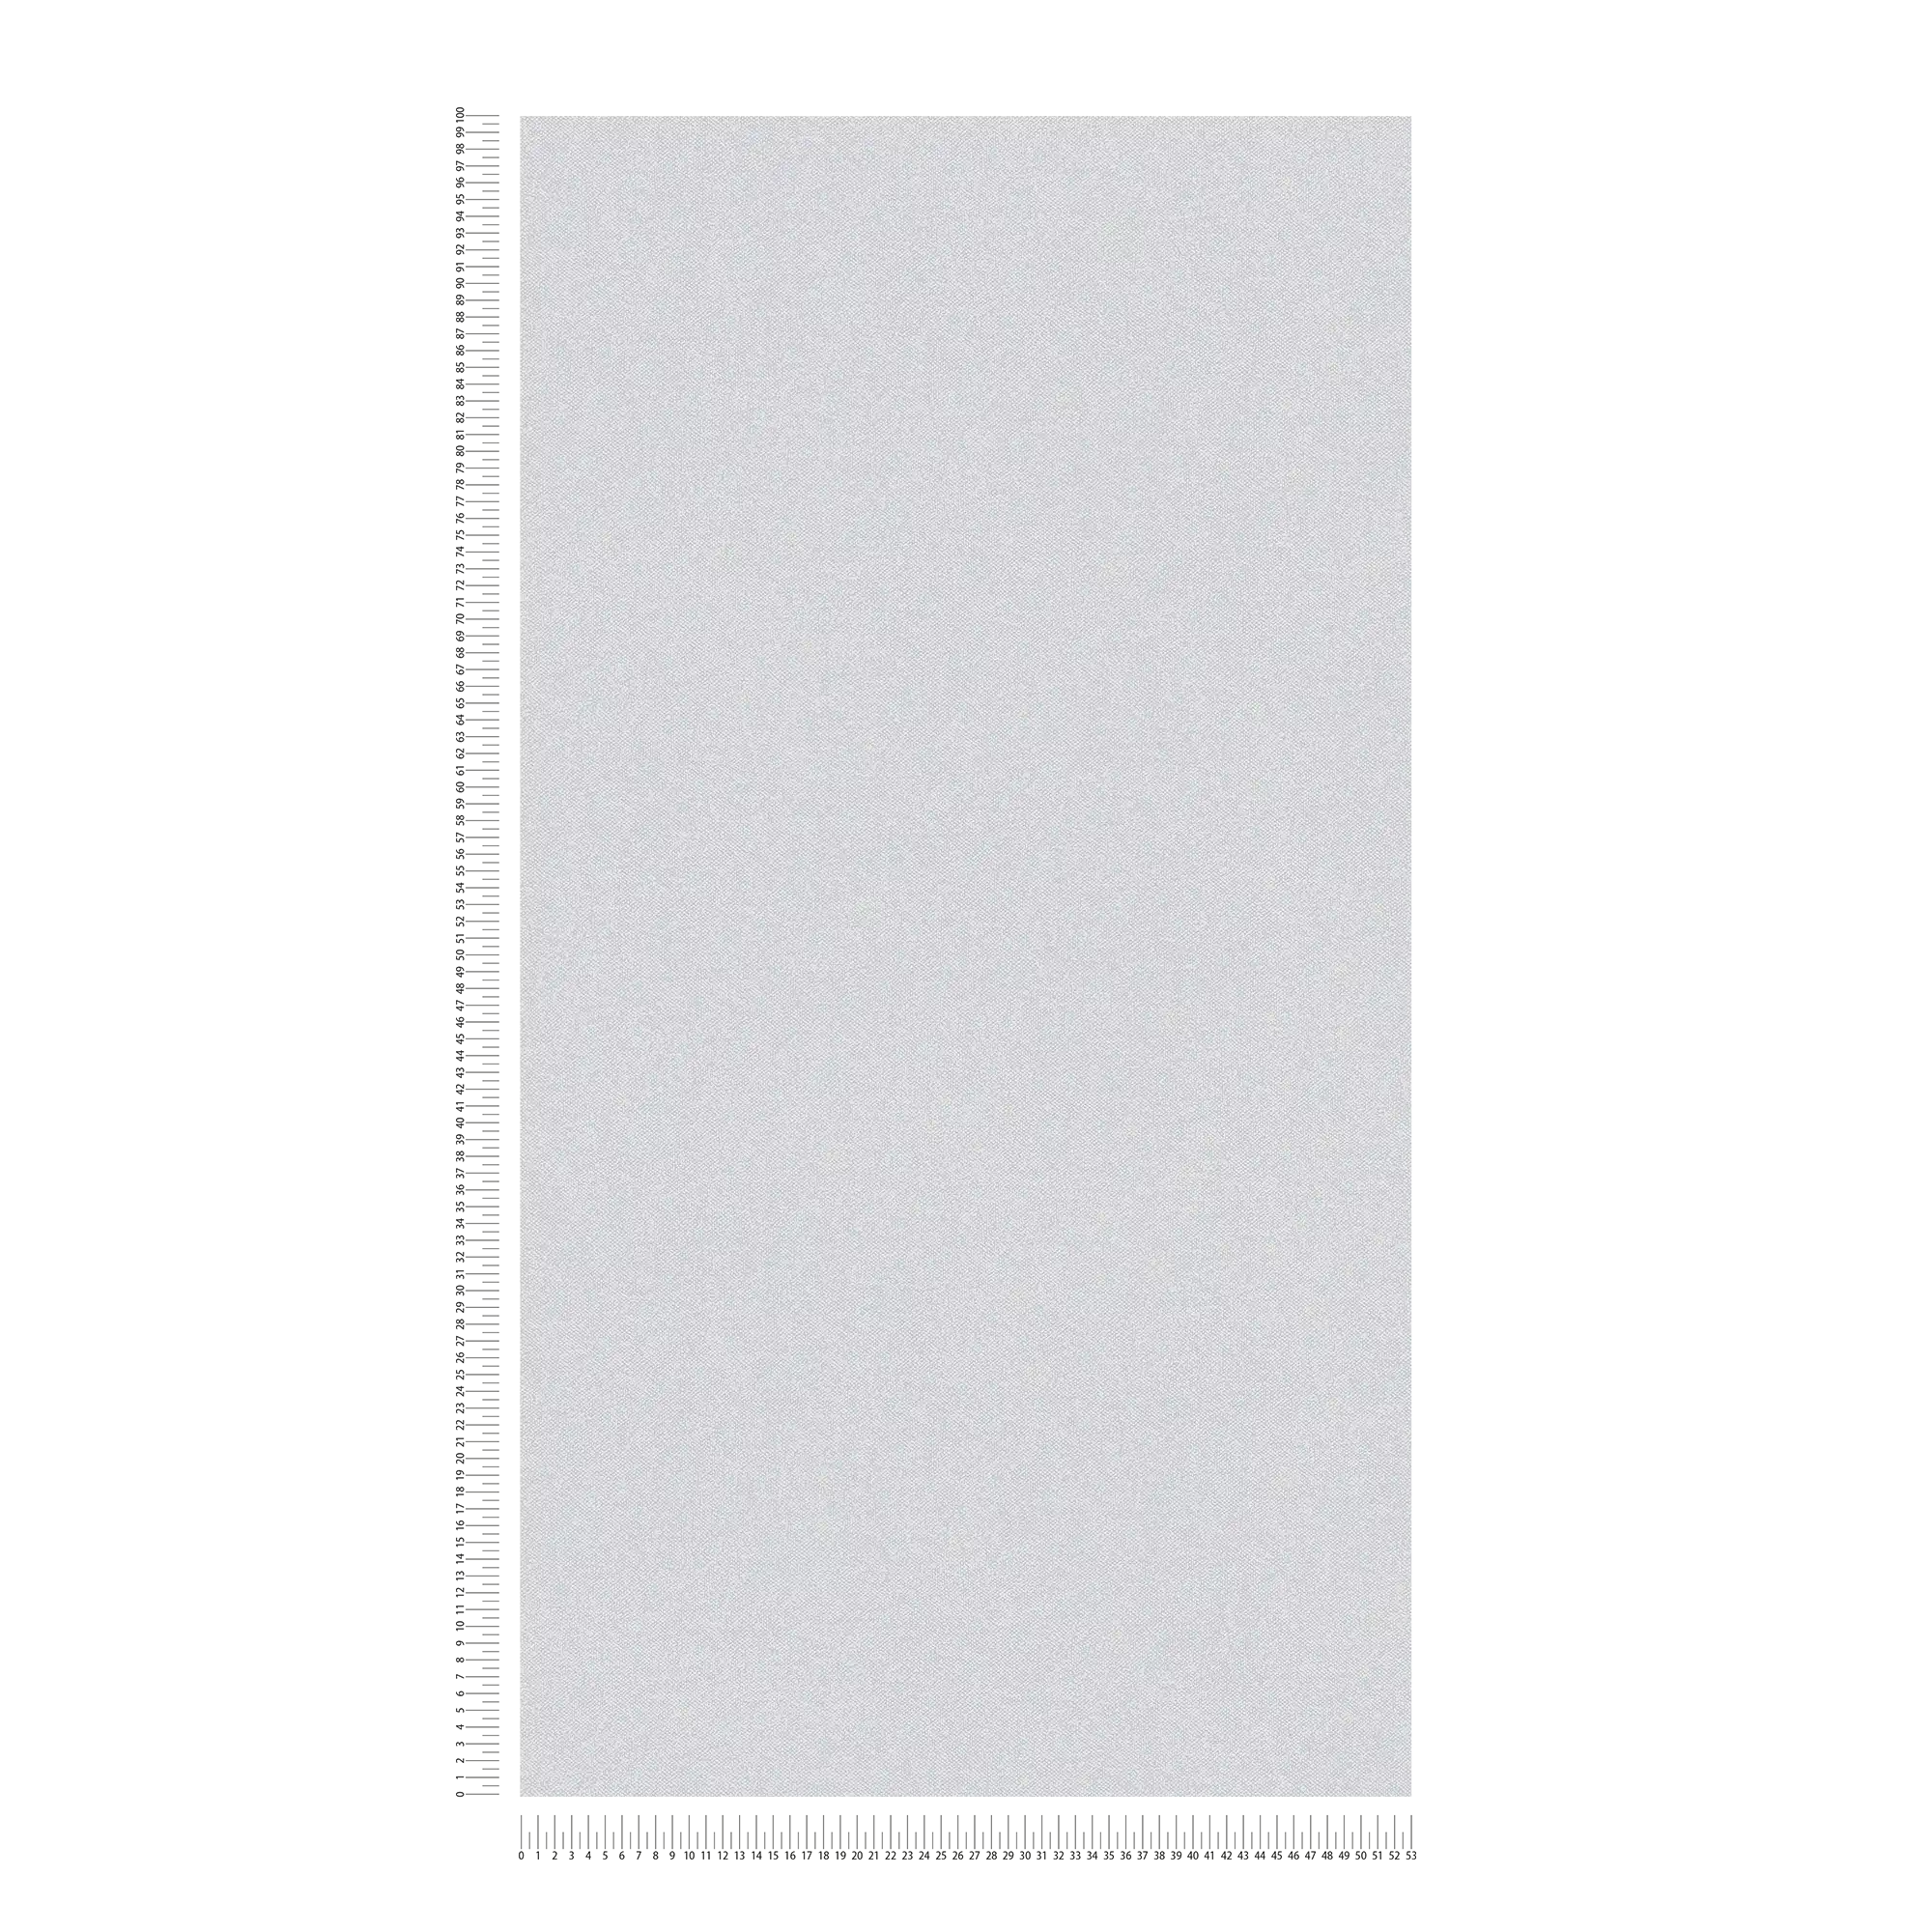             Carta da parati liscia con aspetto di lino, testurizzata - blu, grigio
        